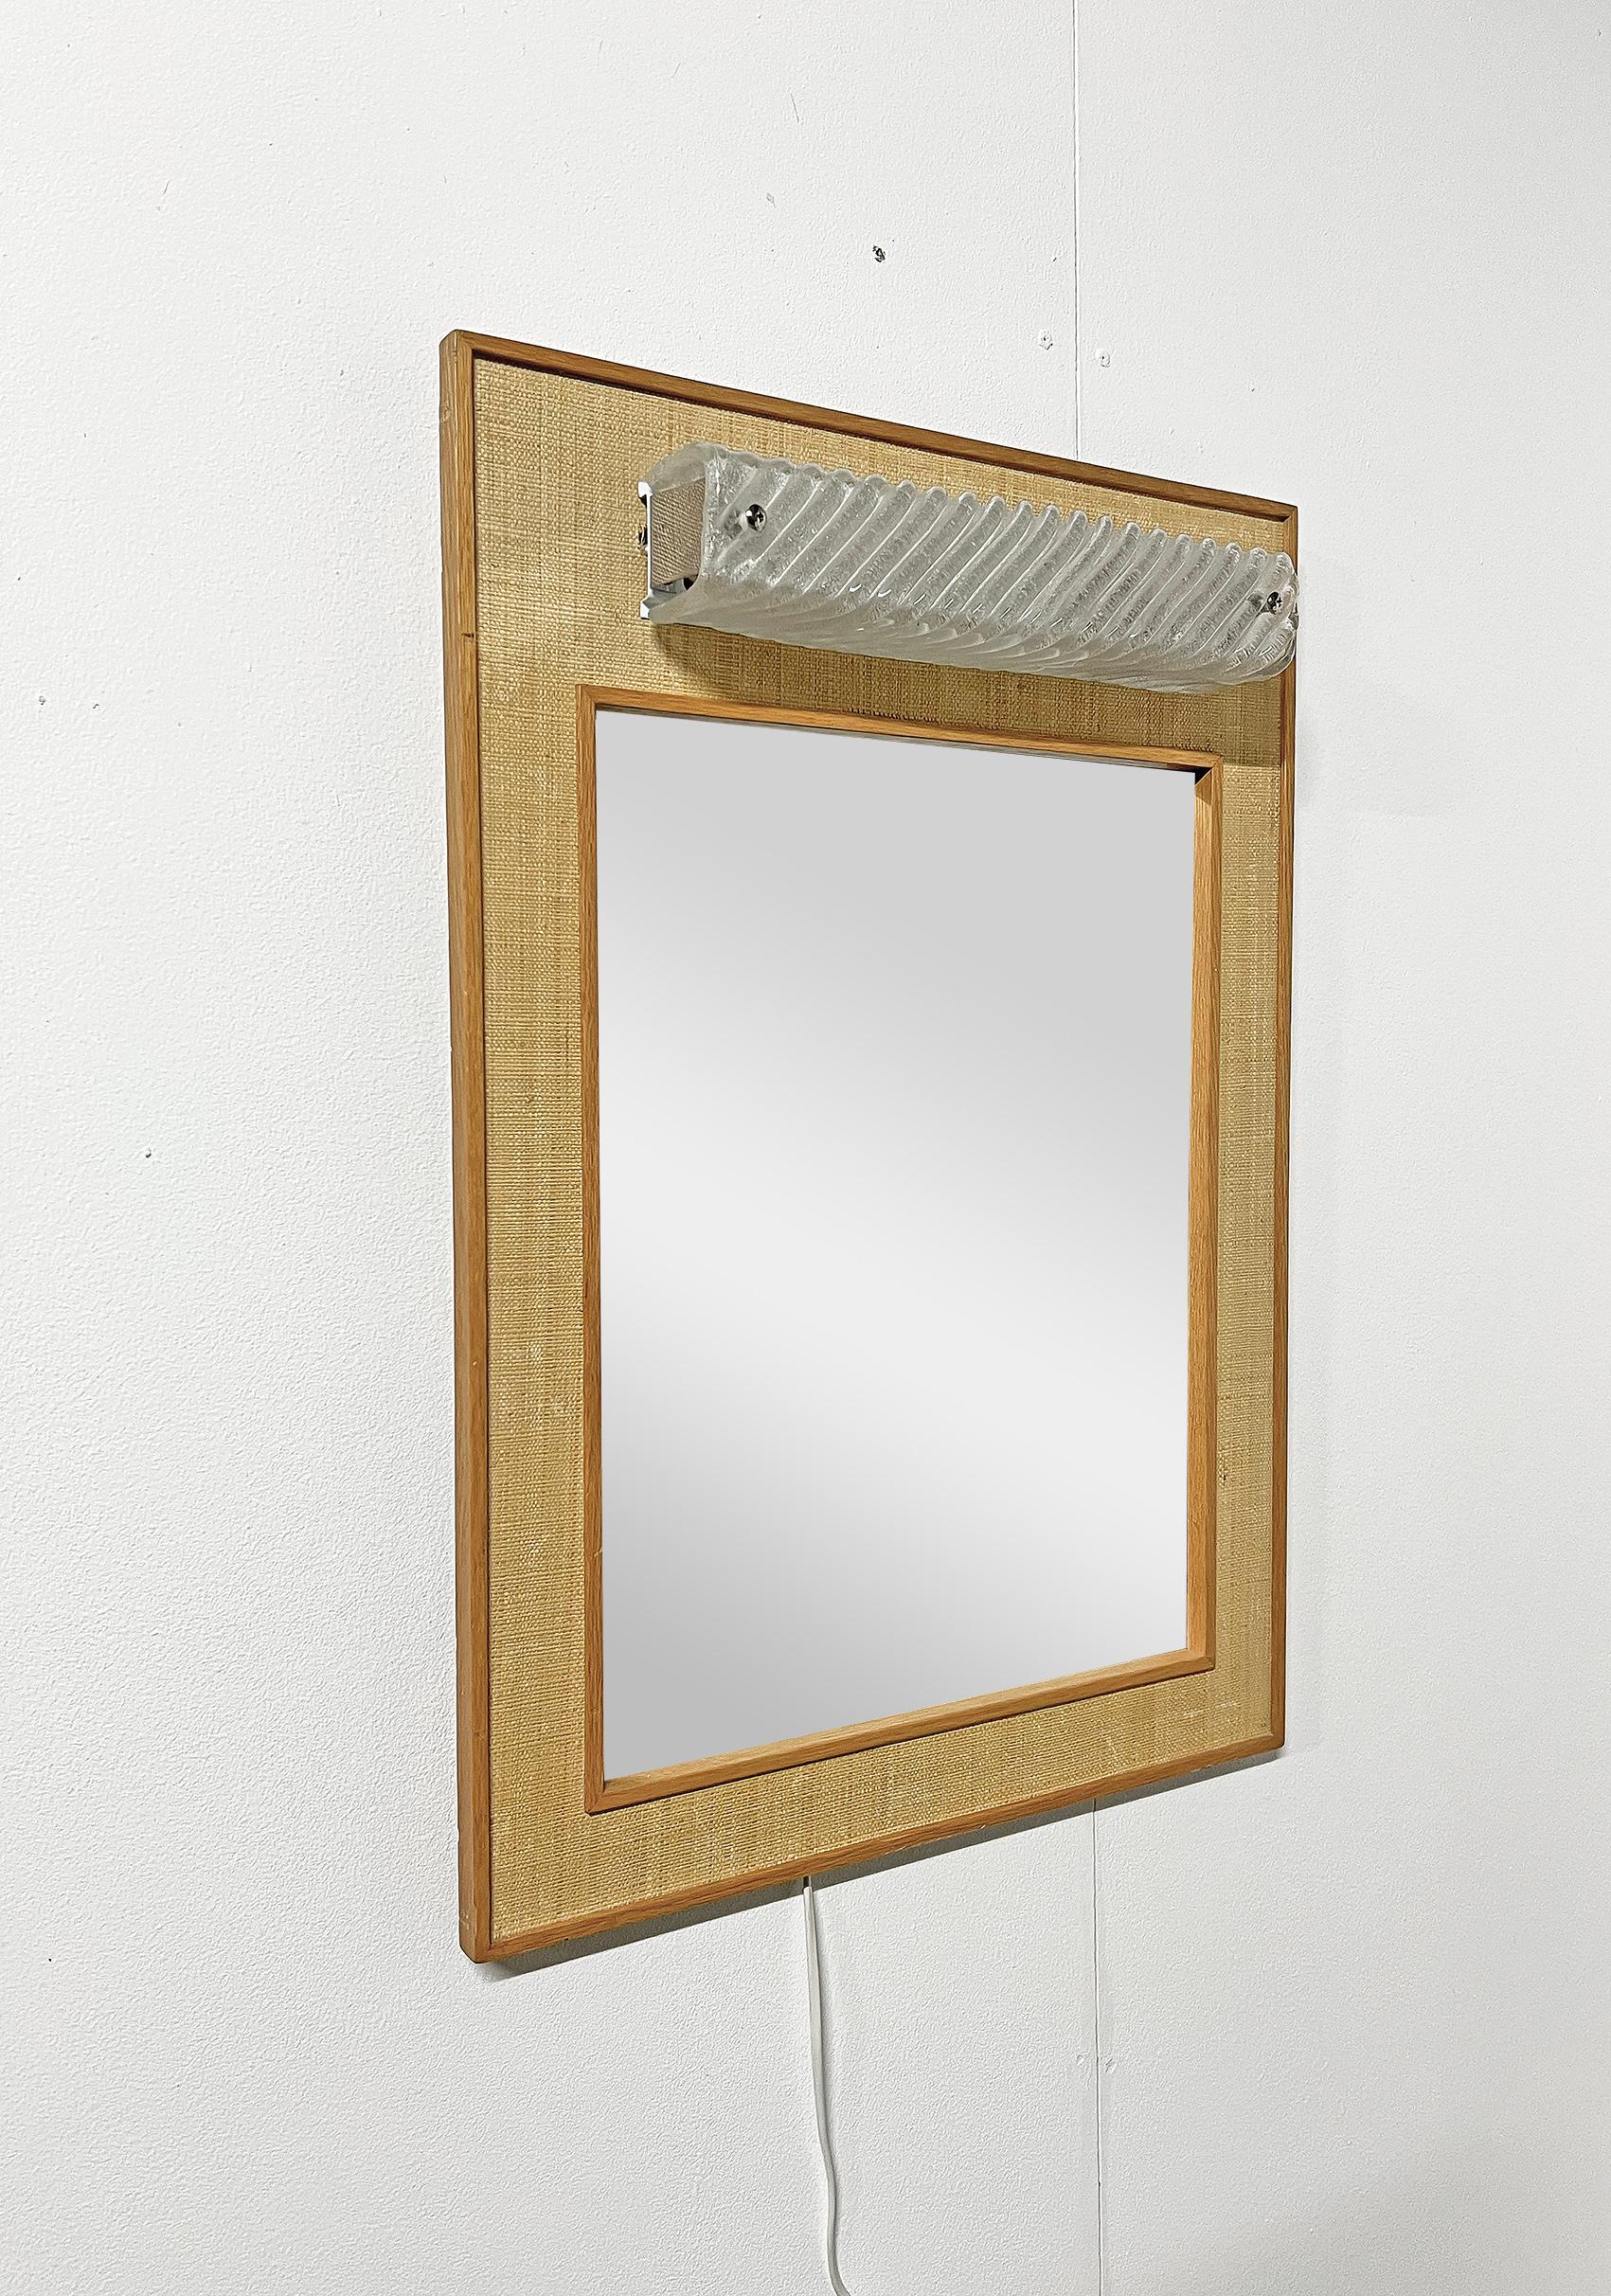 The Modern Scandinavian wall mirror with lighting, Fröseke AB Nybrofabriken,  Vers les années 1950. 
Signé avec la marque du fabricant.
Bon état vintage, usure et patine correspondant à l'âge et à l'utilisation. 
Usure et patine sur le rotin et le